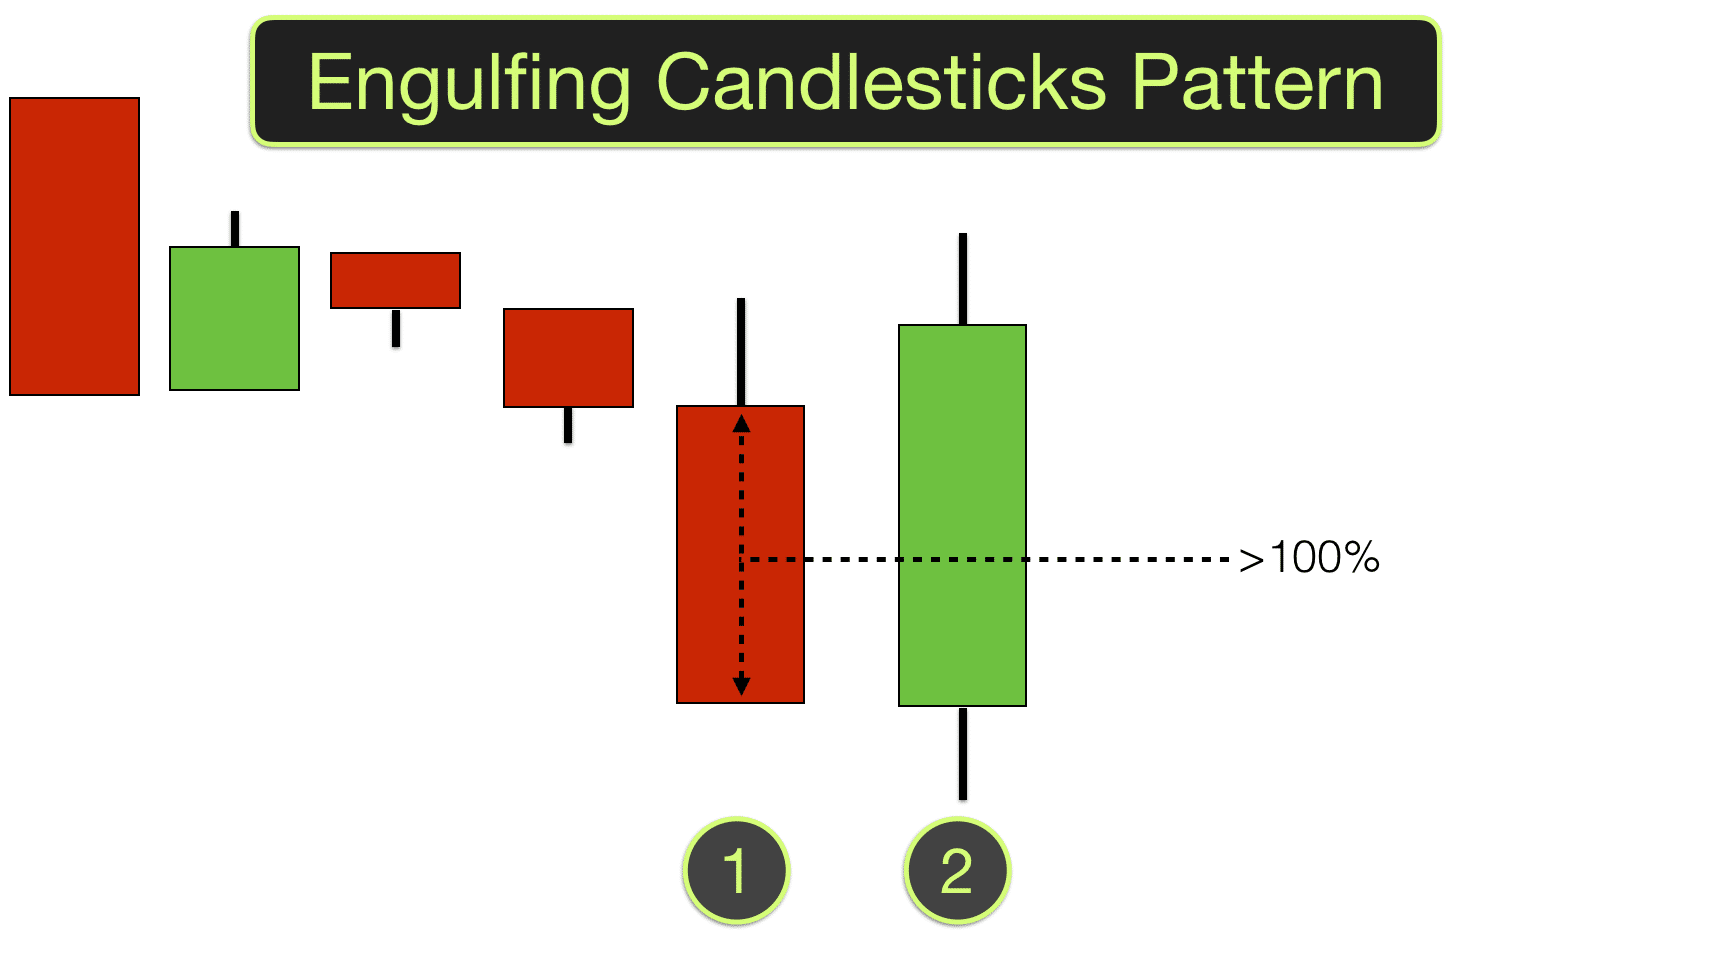 Engulfing candlesticks | Engulfing candles